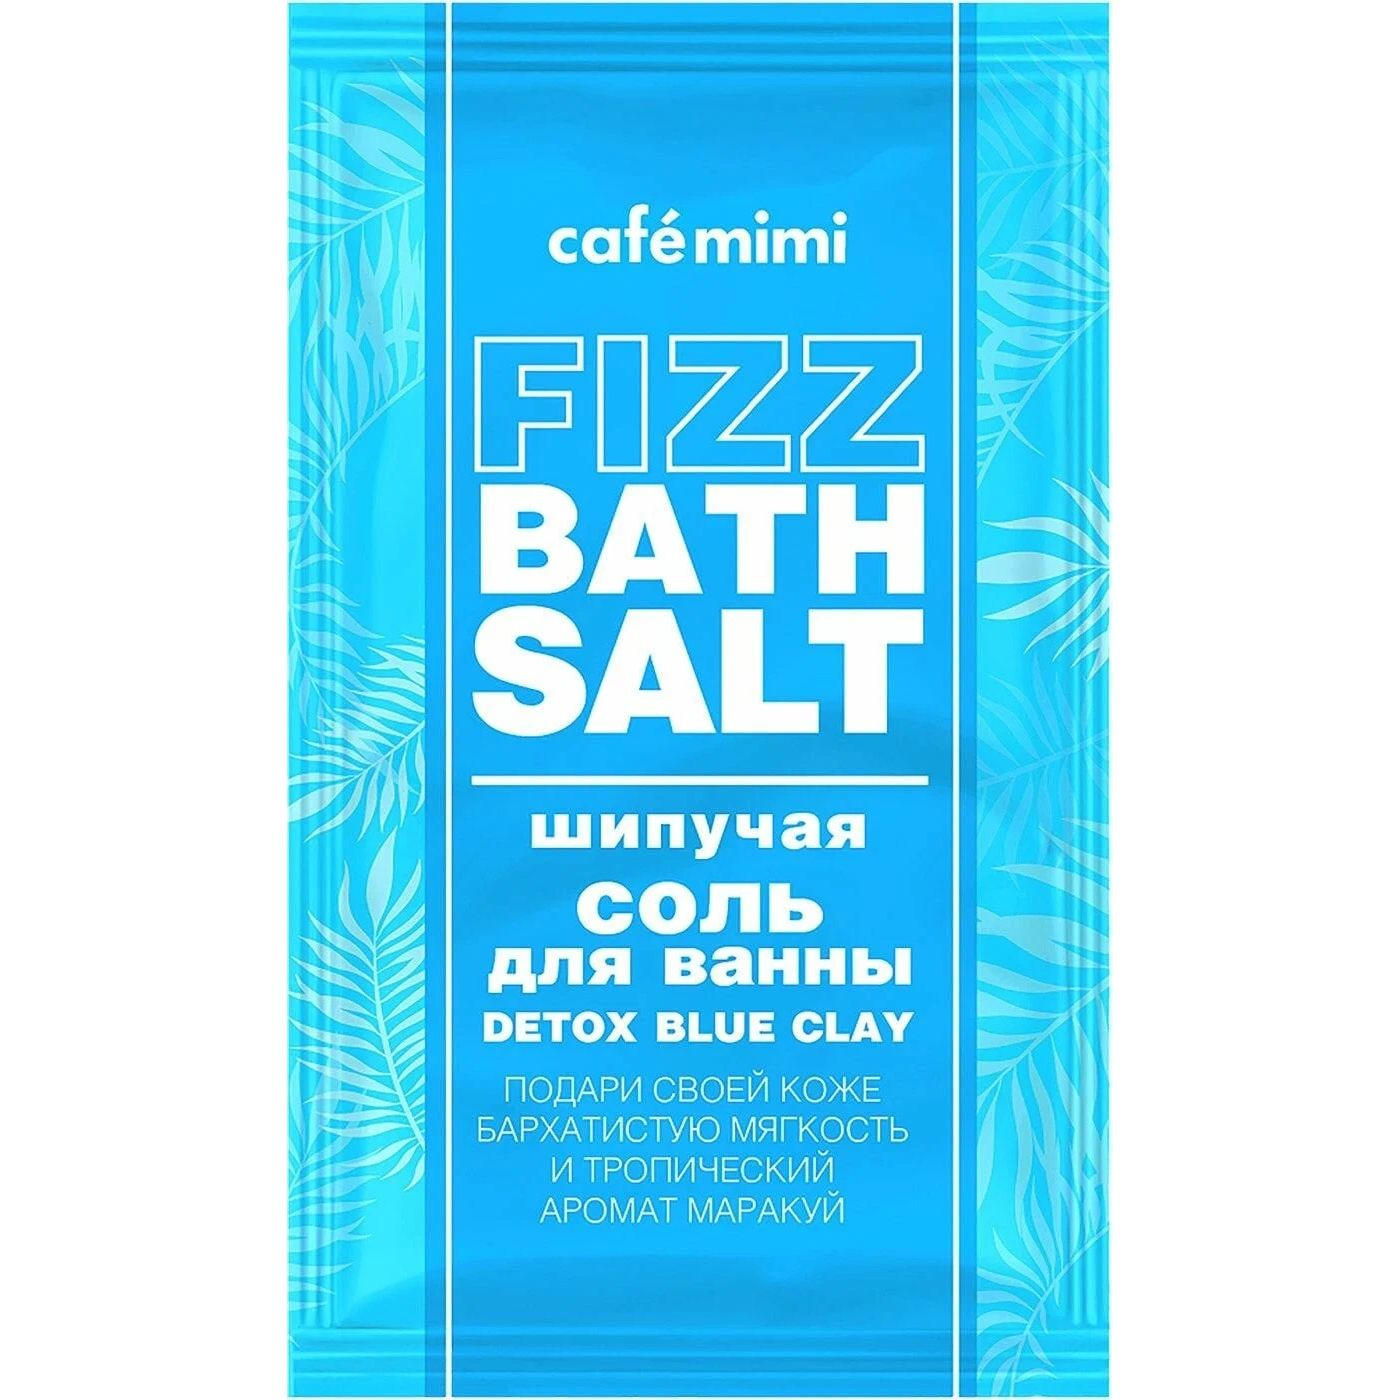 Соль для ванн Cafemimi Fizz Bath Salt Detox Blue Clay шипучая, 100 г соль расслабляющая для ванн с минералами мёртвого моря relaxing dead sea bath salt